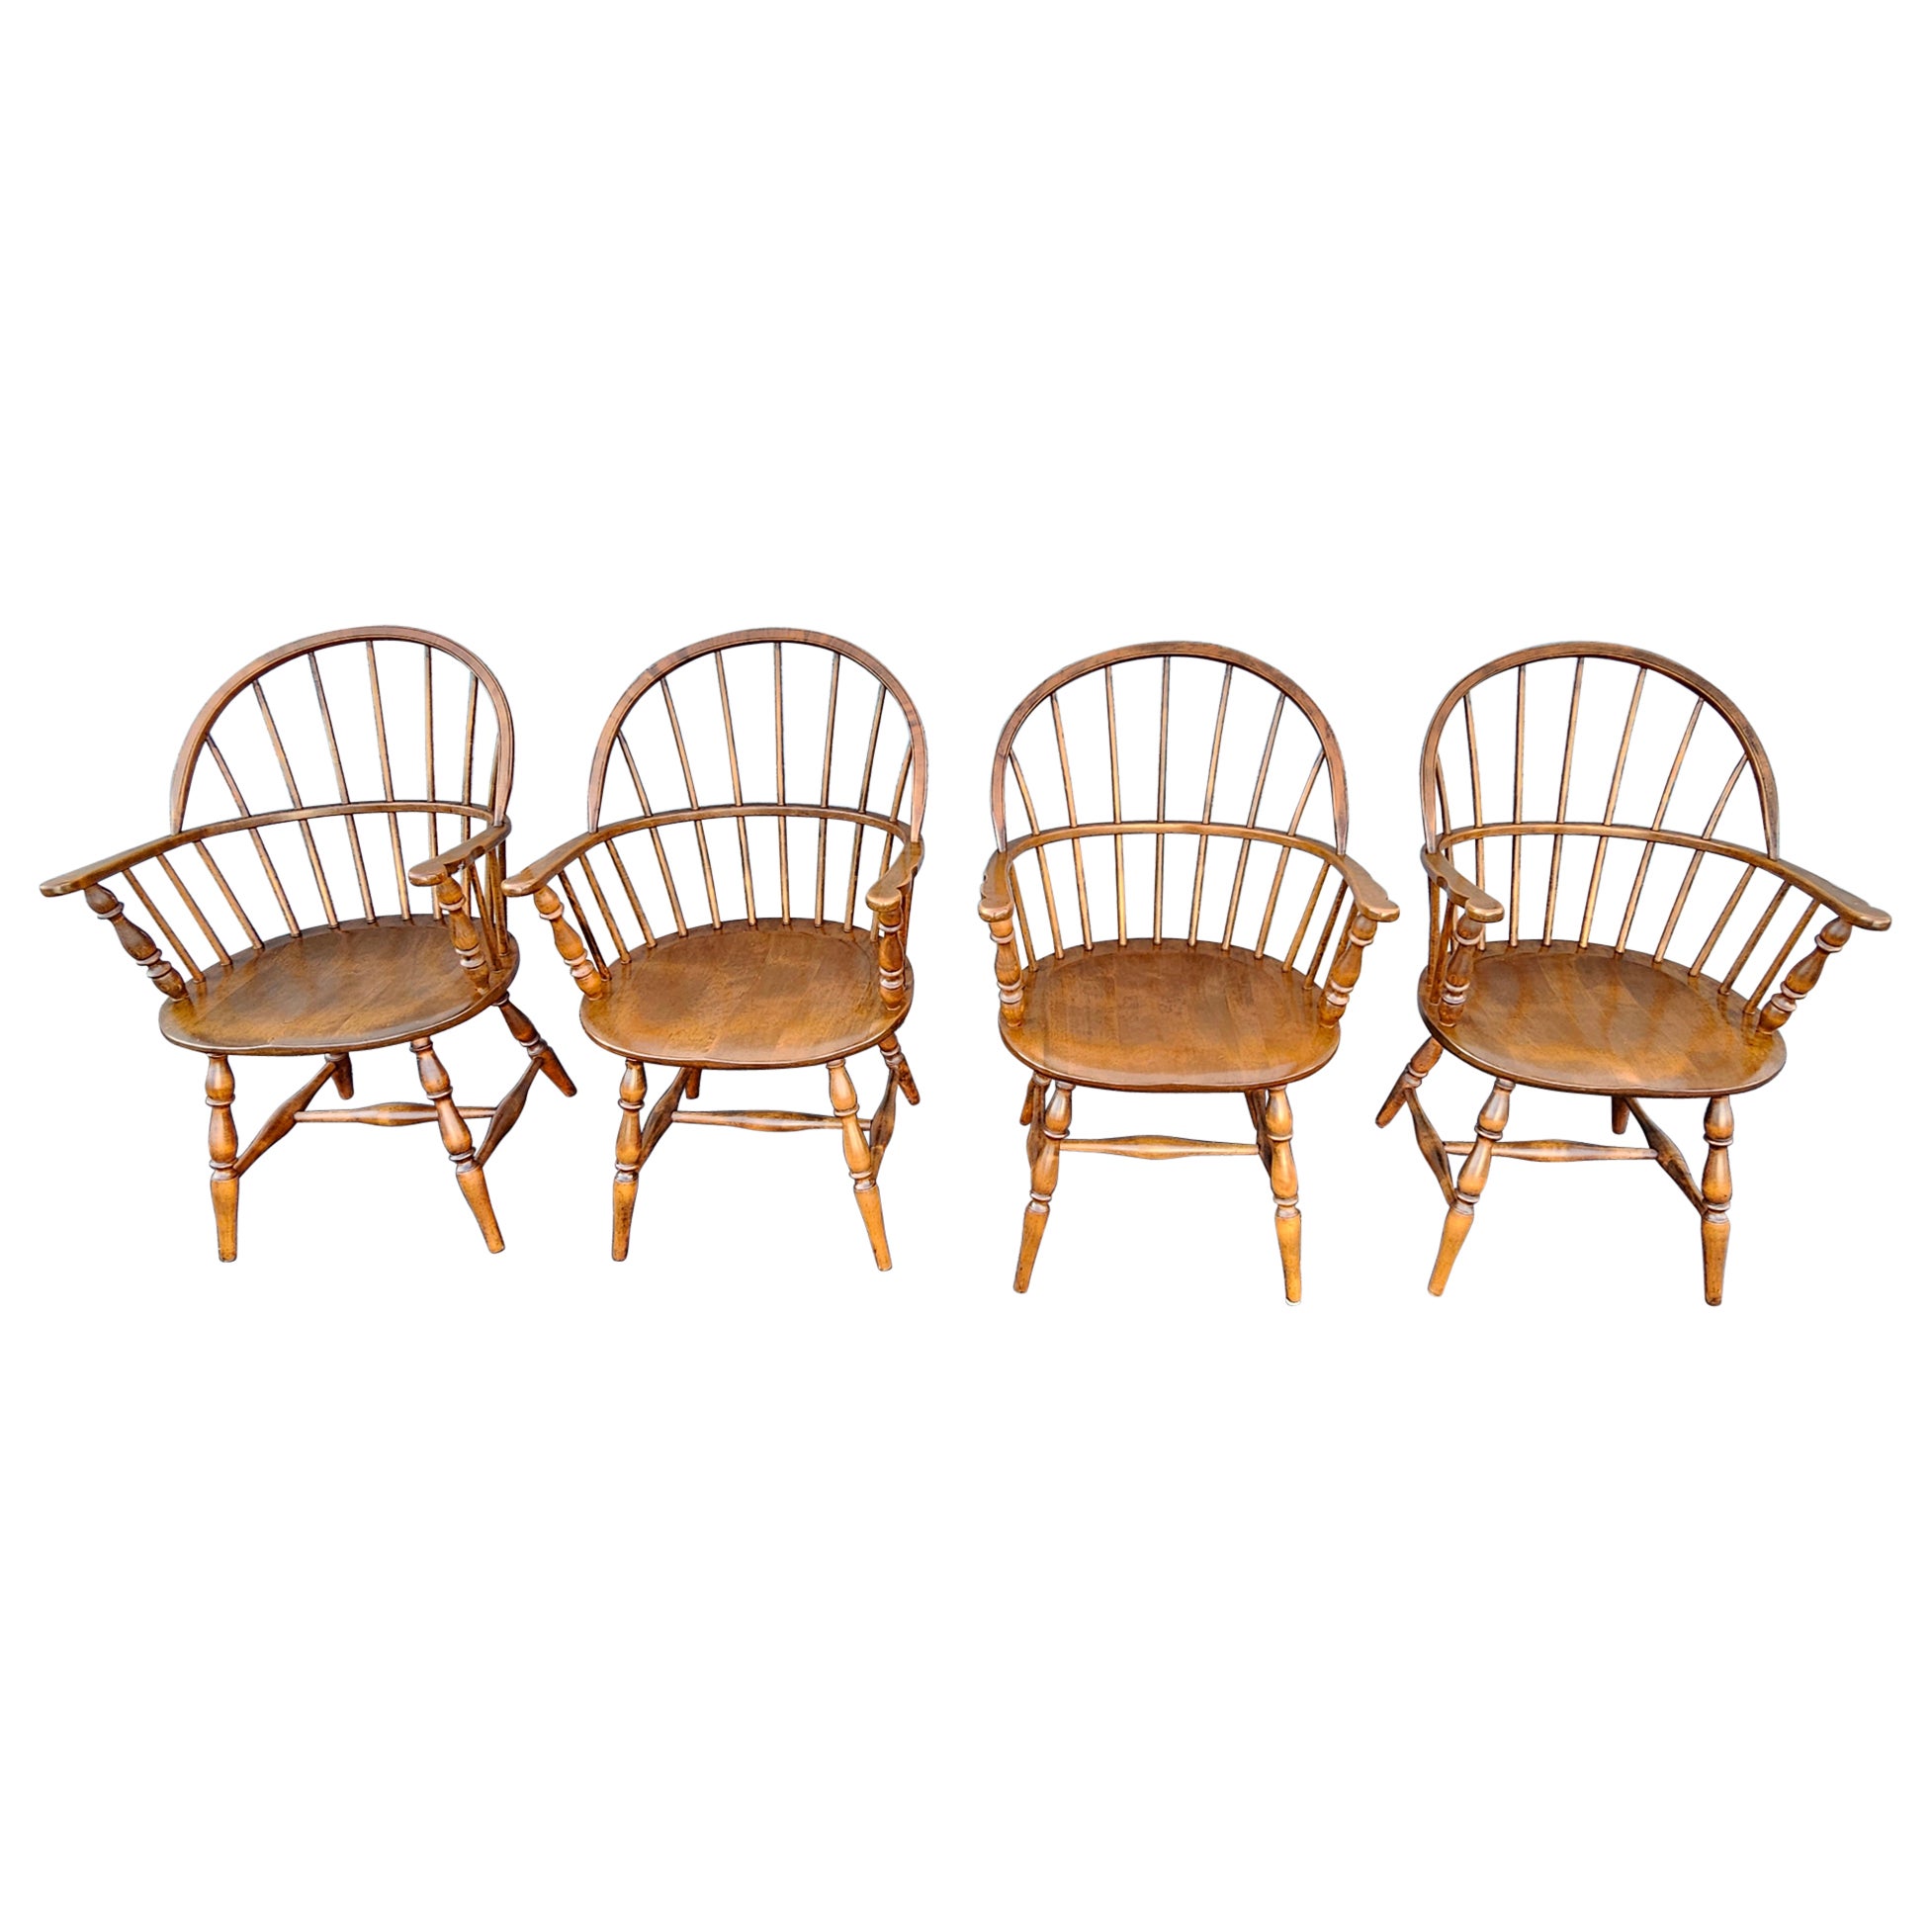 Ensemble de quatre fauteuils Windsor à dossier arrondi en érable, fabriqués à la main par les Amish en vente